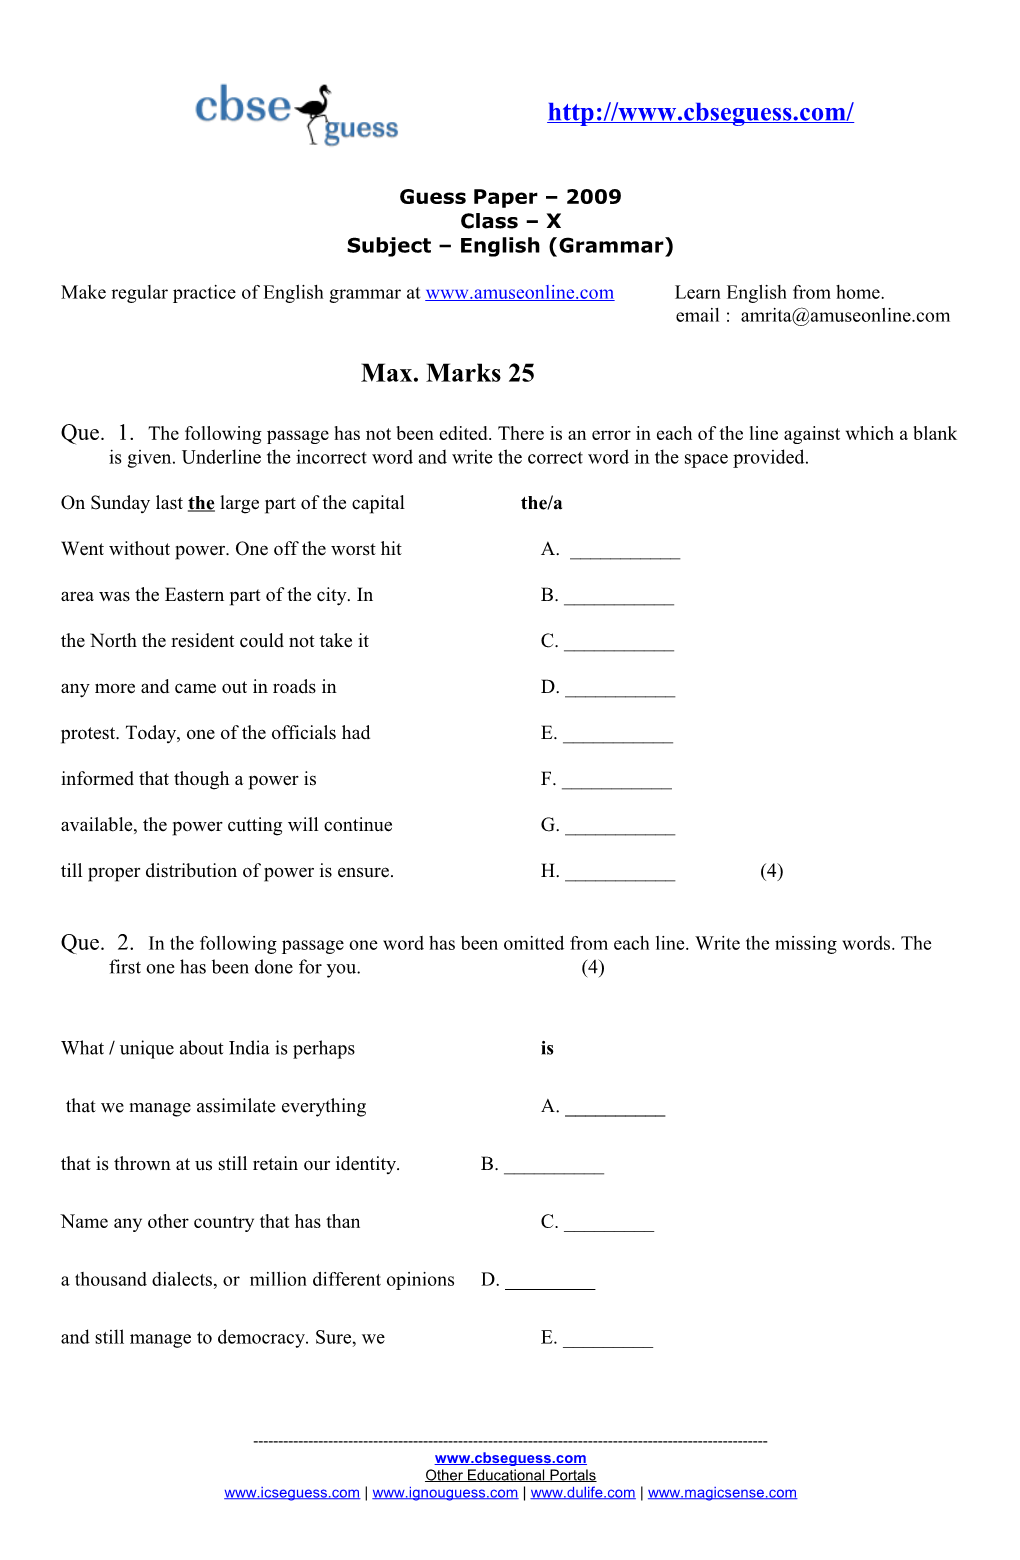 Practice Test Grammar - Class IX & X Max